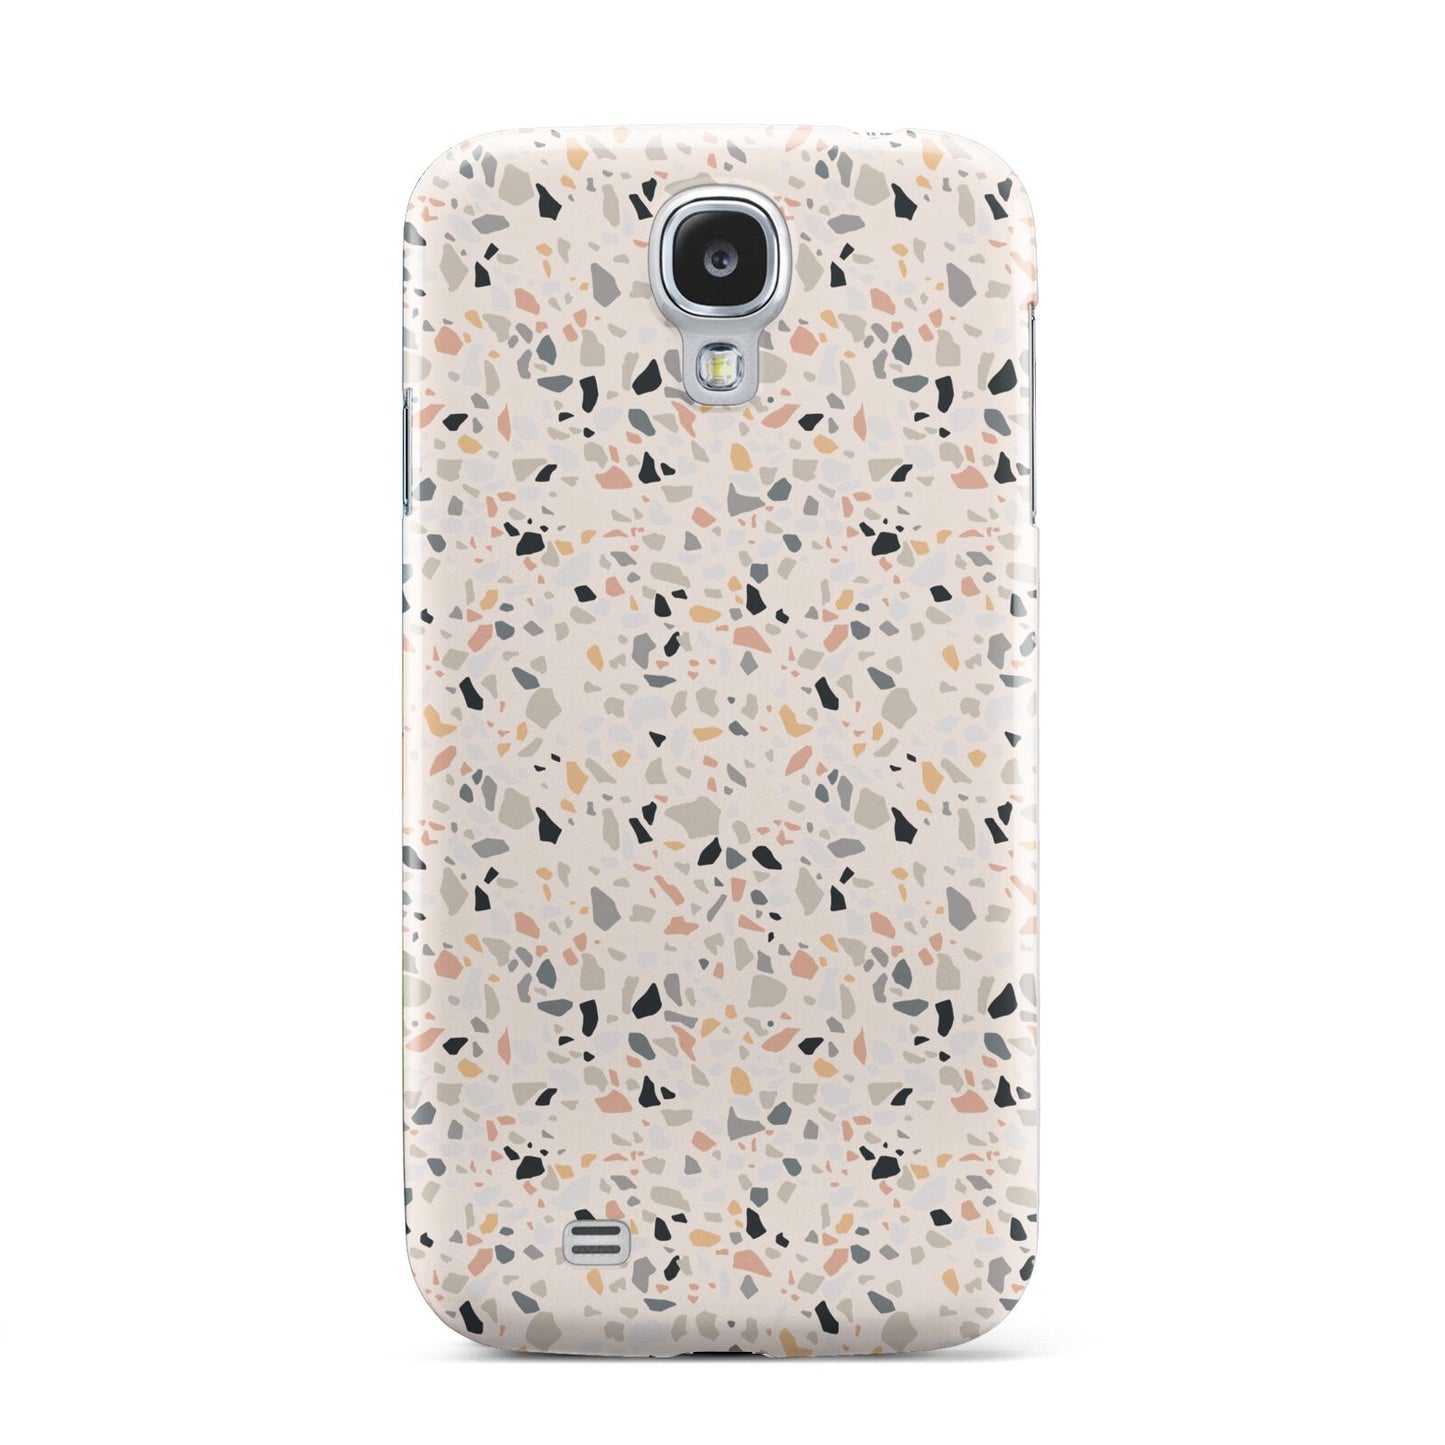 Terrazzo Stone Samsung Galaxy S4 Case